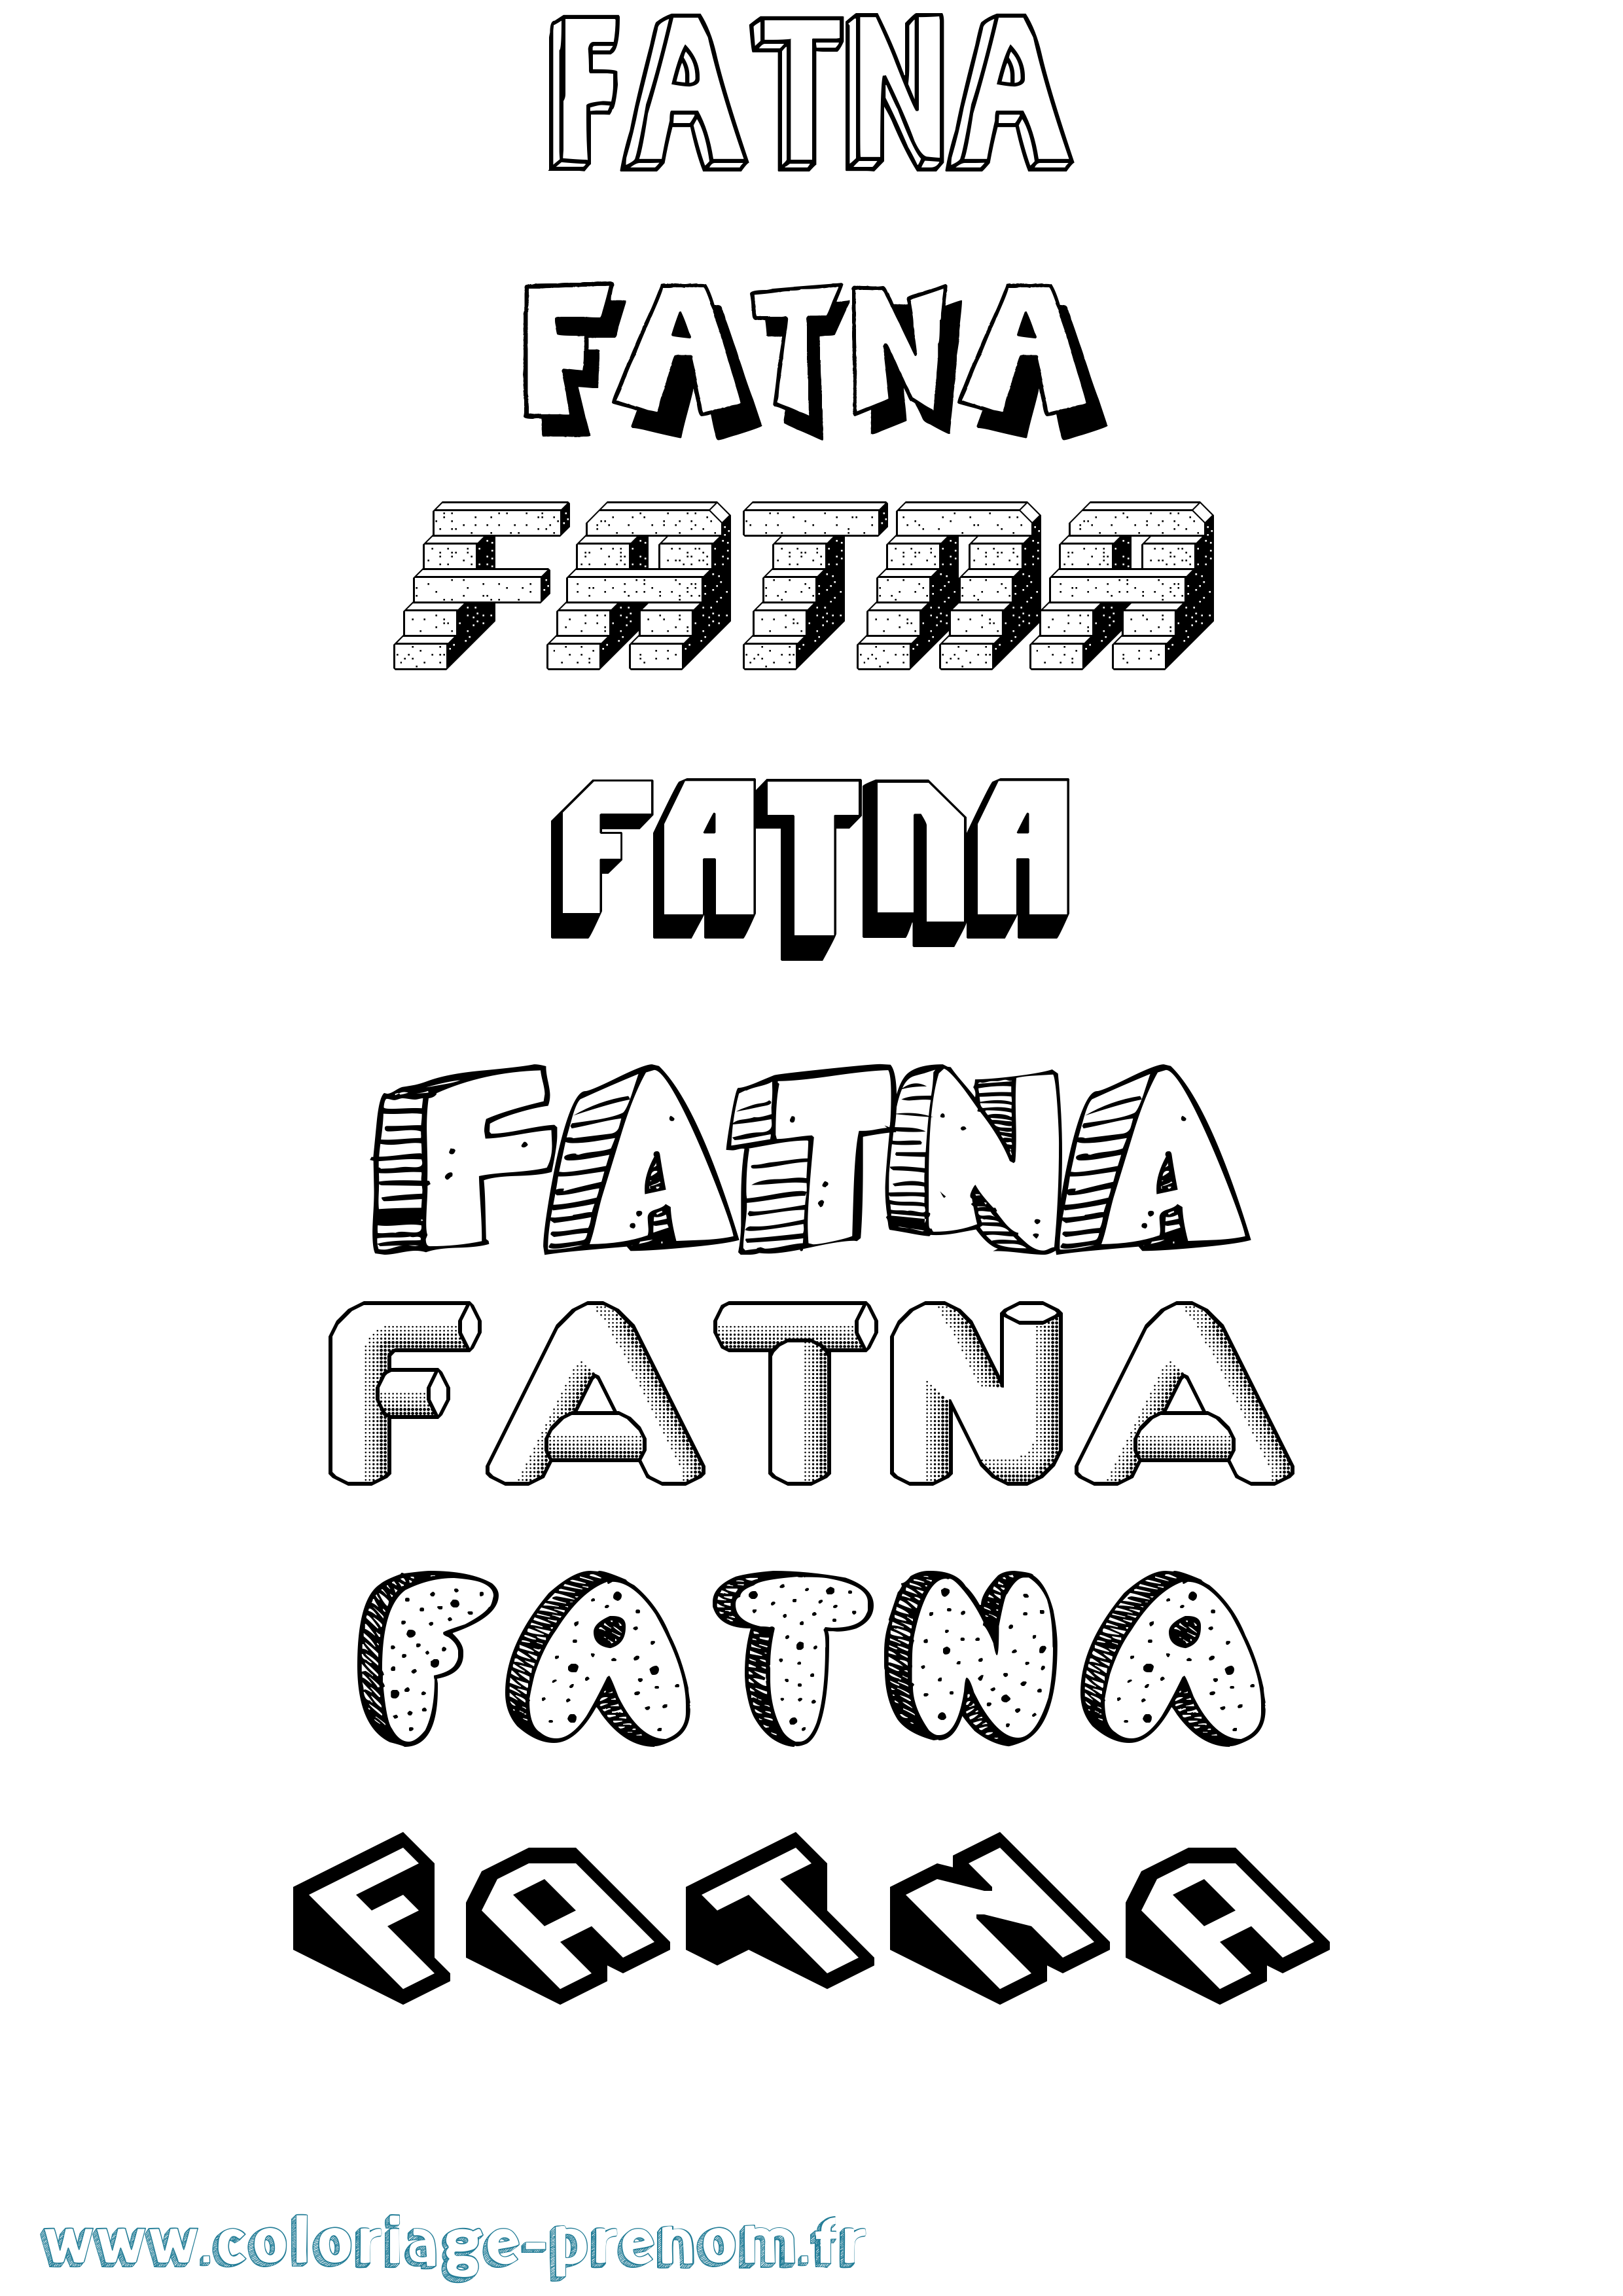 Coloriage prénom Fatna Effet 3D